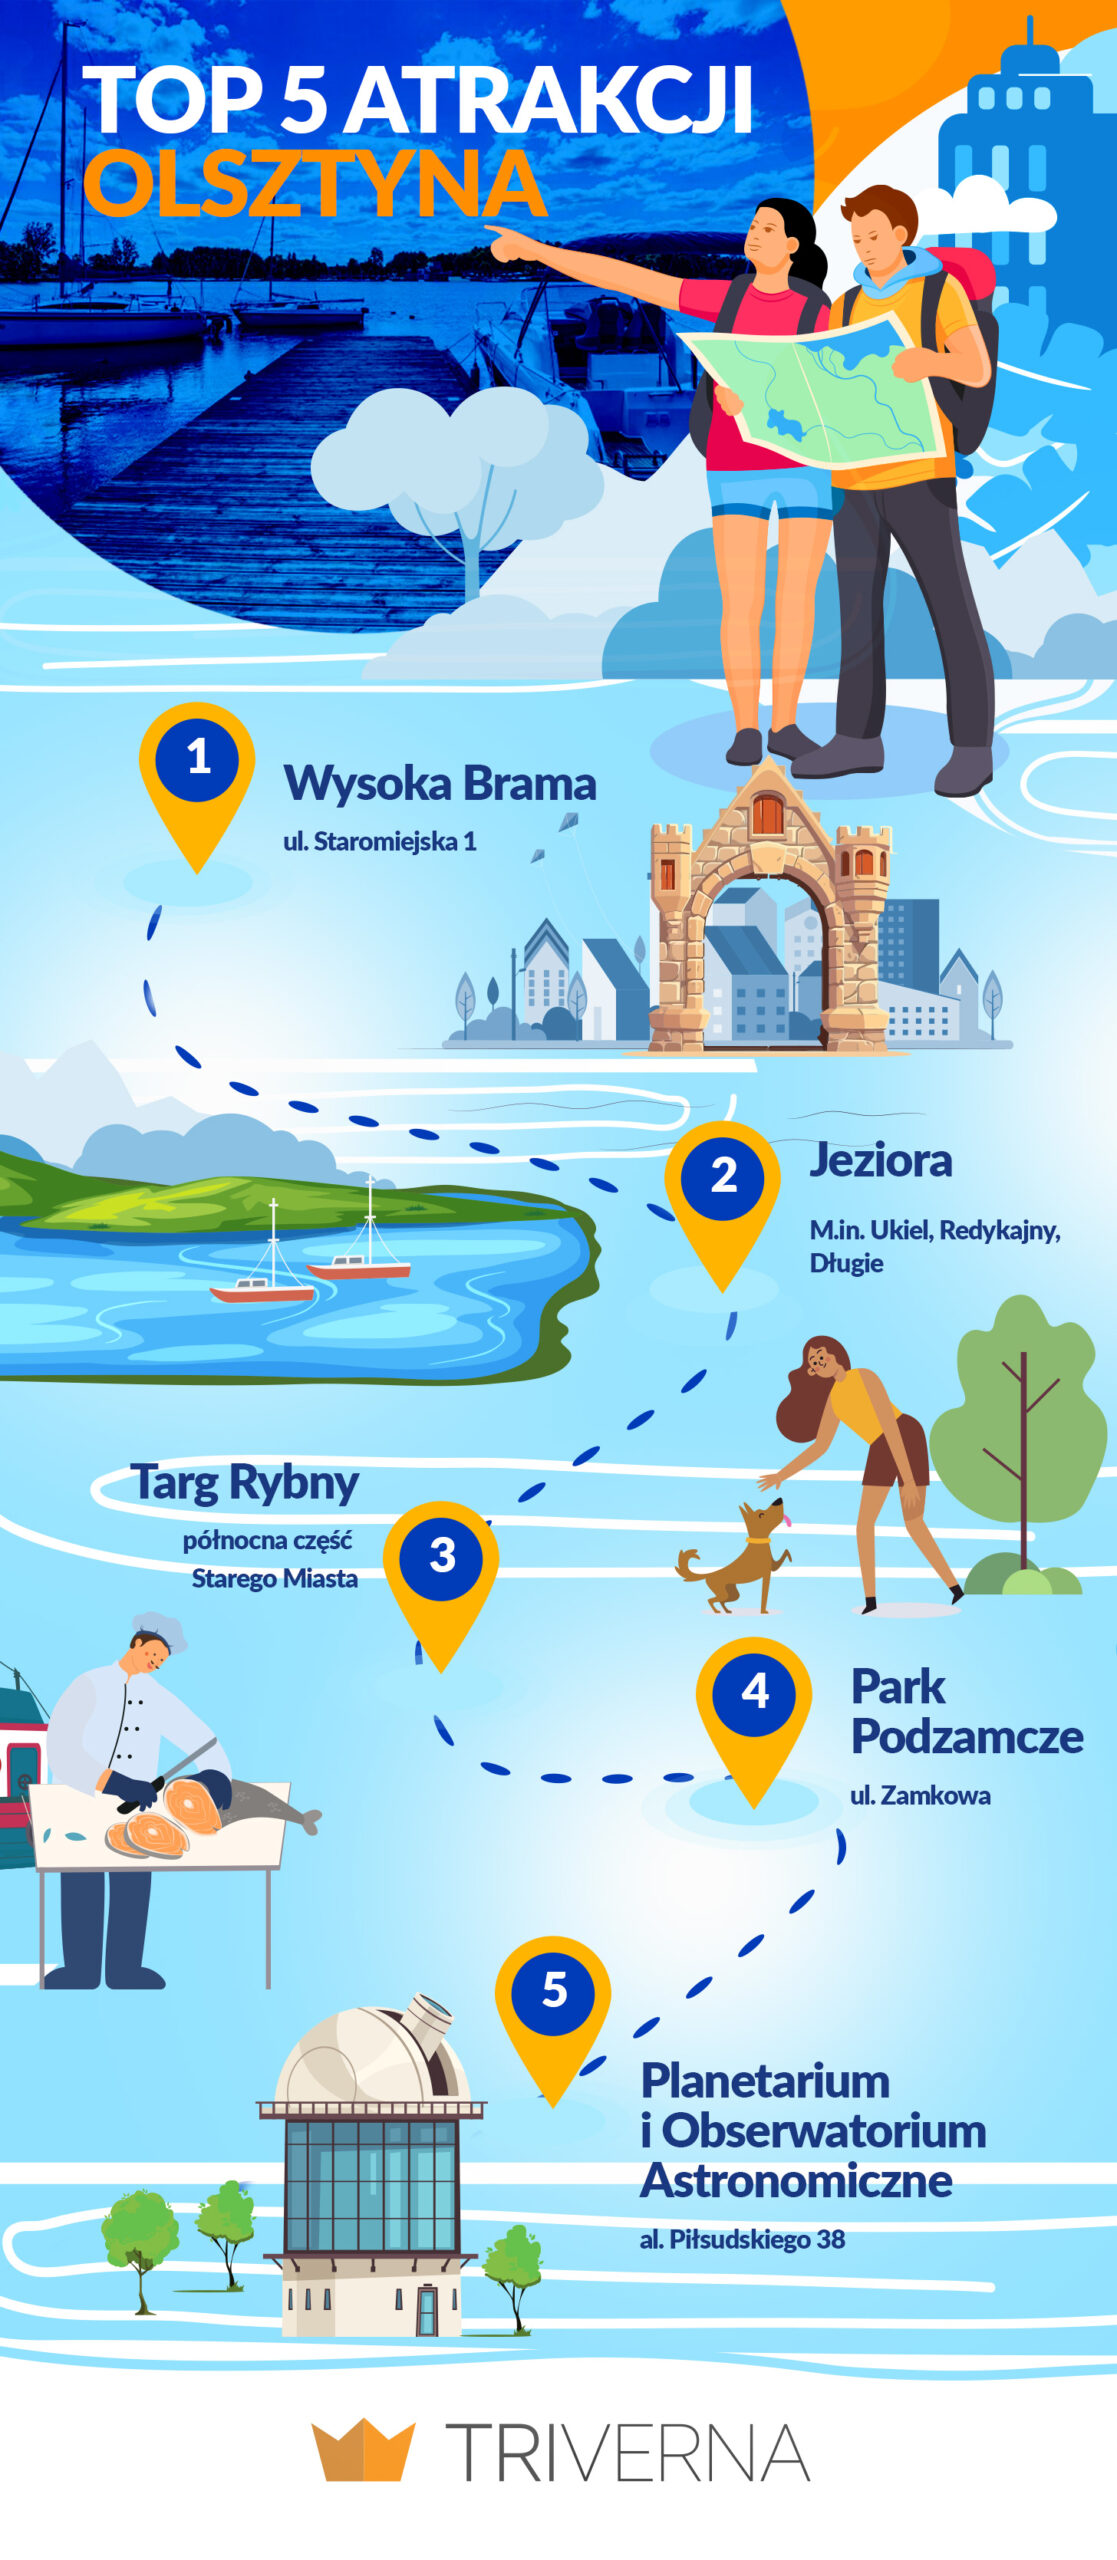 Top atrakcje w Olsztynie - infografika